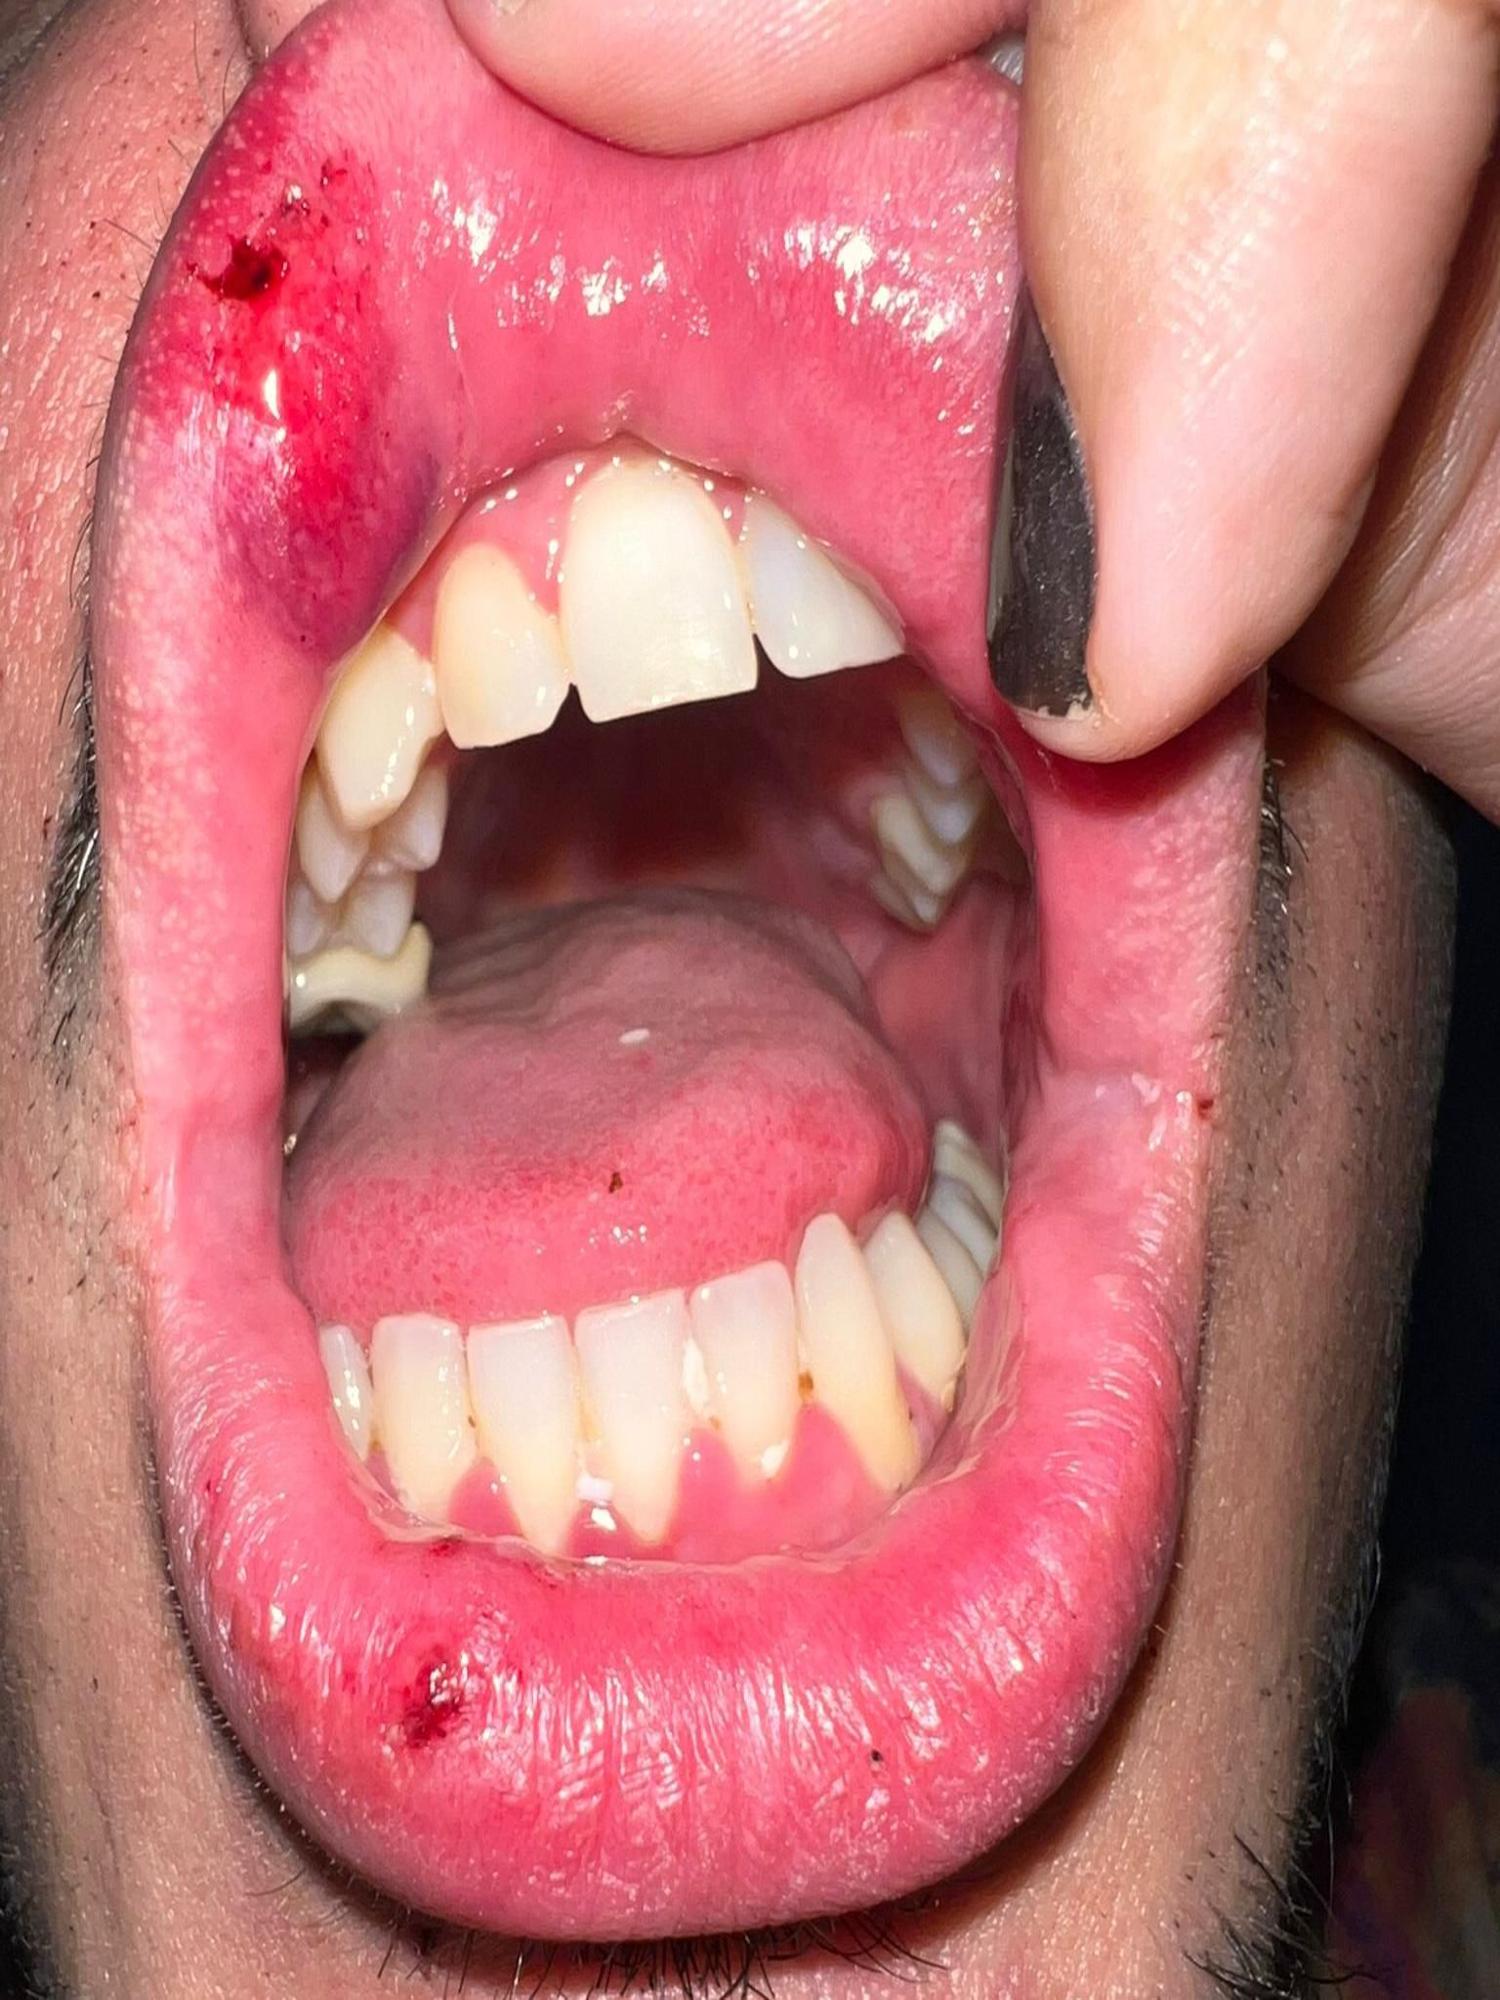 El labio de M.R. tras la agresión, con varias heridas e inflamación.